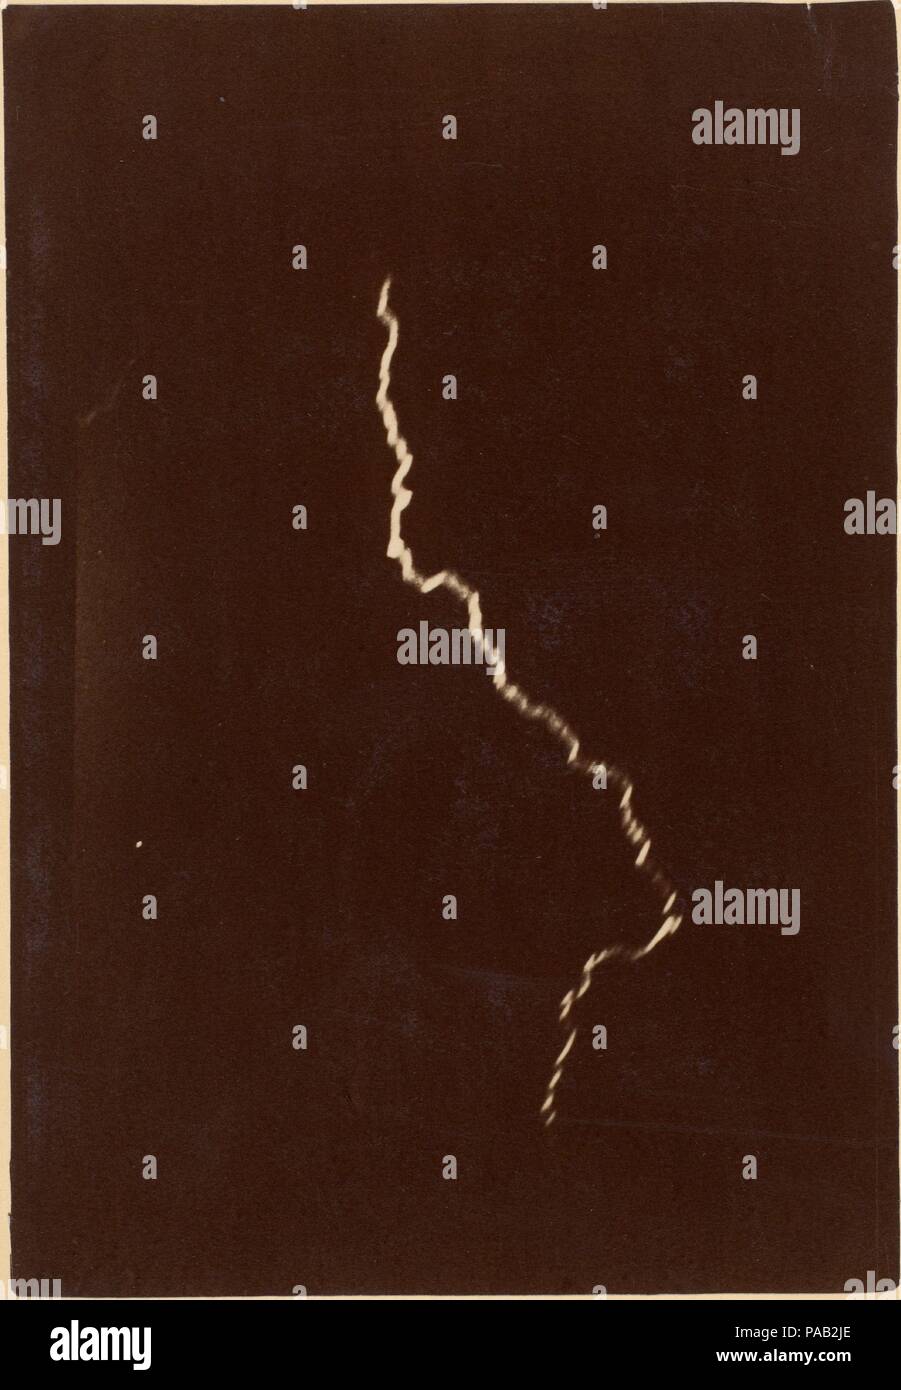 [Spirale de la foudre dans un orage]. Artiste : Charles Moussette (français, actif 1880). Dimensions : Support : 9 13/16 in. × 6 7/8 in. (25 × 17,5 cm) Image : 6 5/8 x 4 5/8 in. (16,9 × 11,7 cm). Date : 12 mai, 1886. Musée : Metropolitan Museum of Art, New York, USA. Banque D'Images